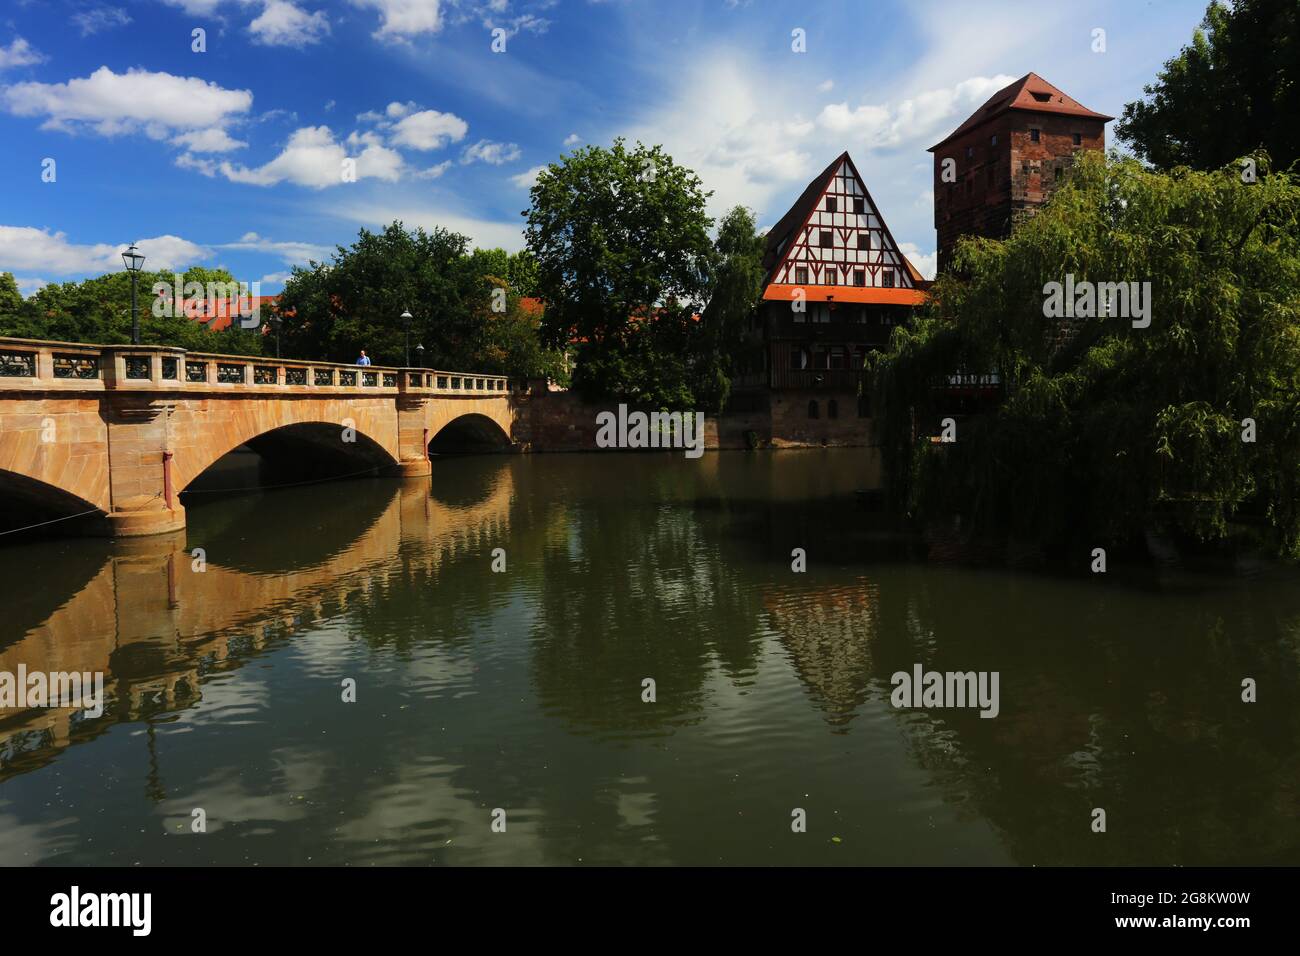 Nürnberg Altstadt oder Innenstadt - Ufer des Fluss Pegnitz, mit Brücke und mittelalterlichen Fachwerkhaus Deutschland Stock Photo